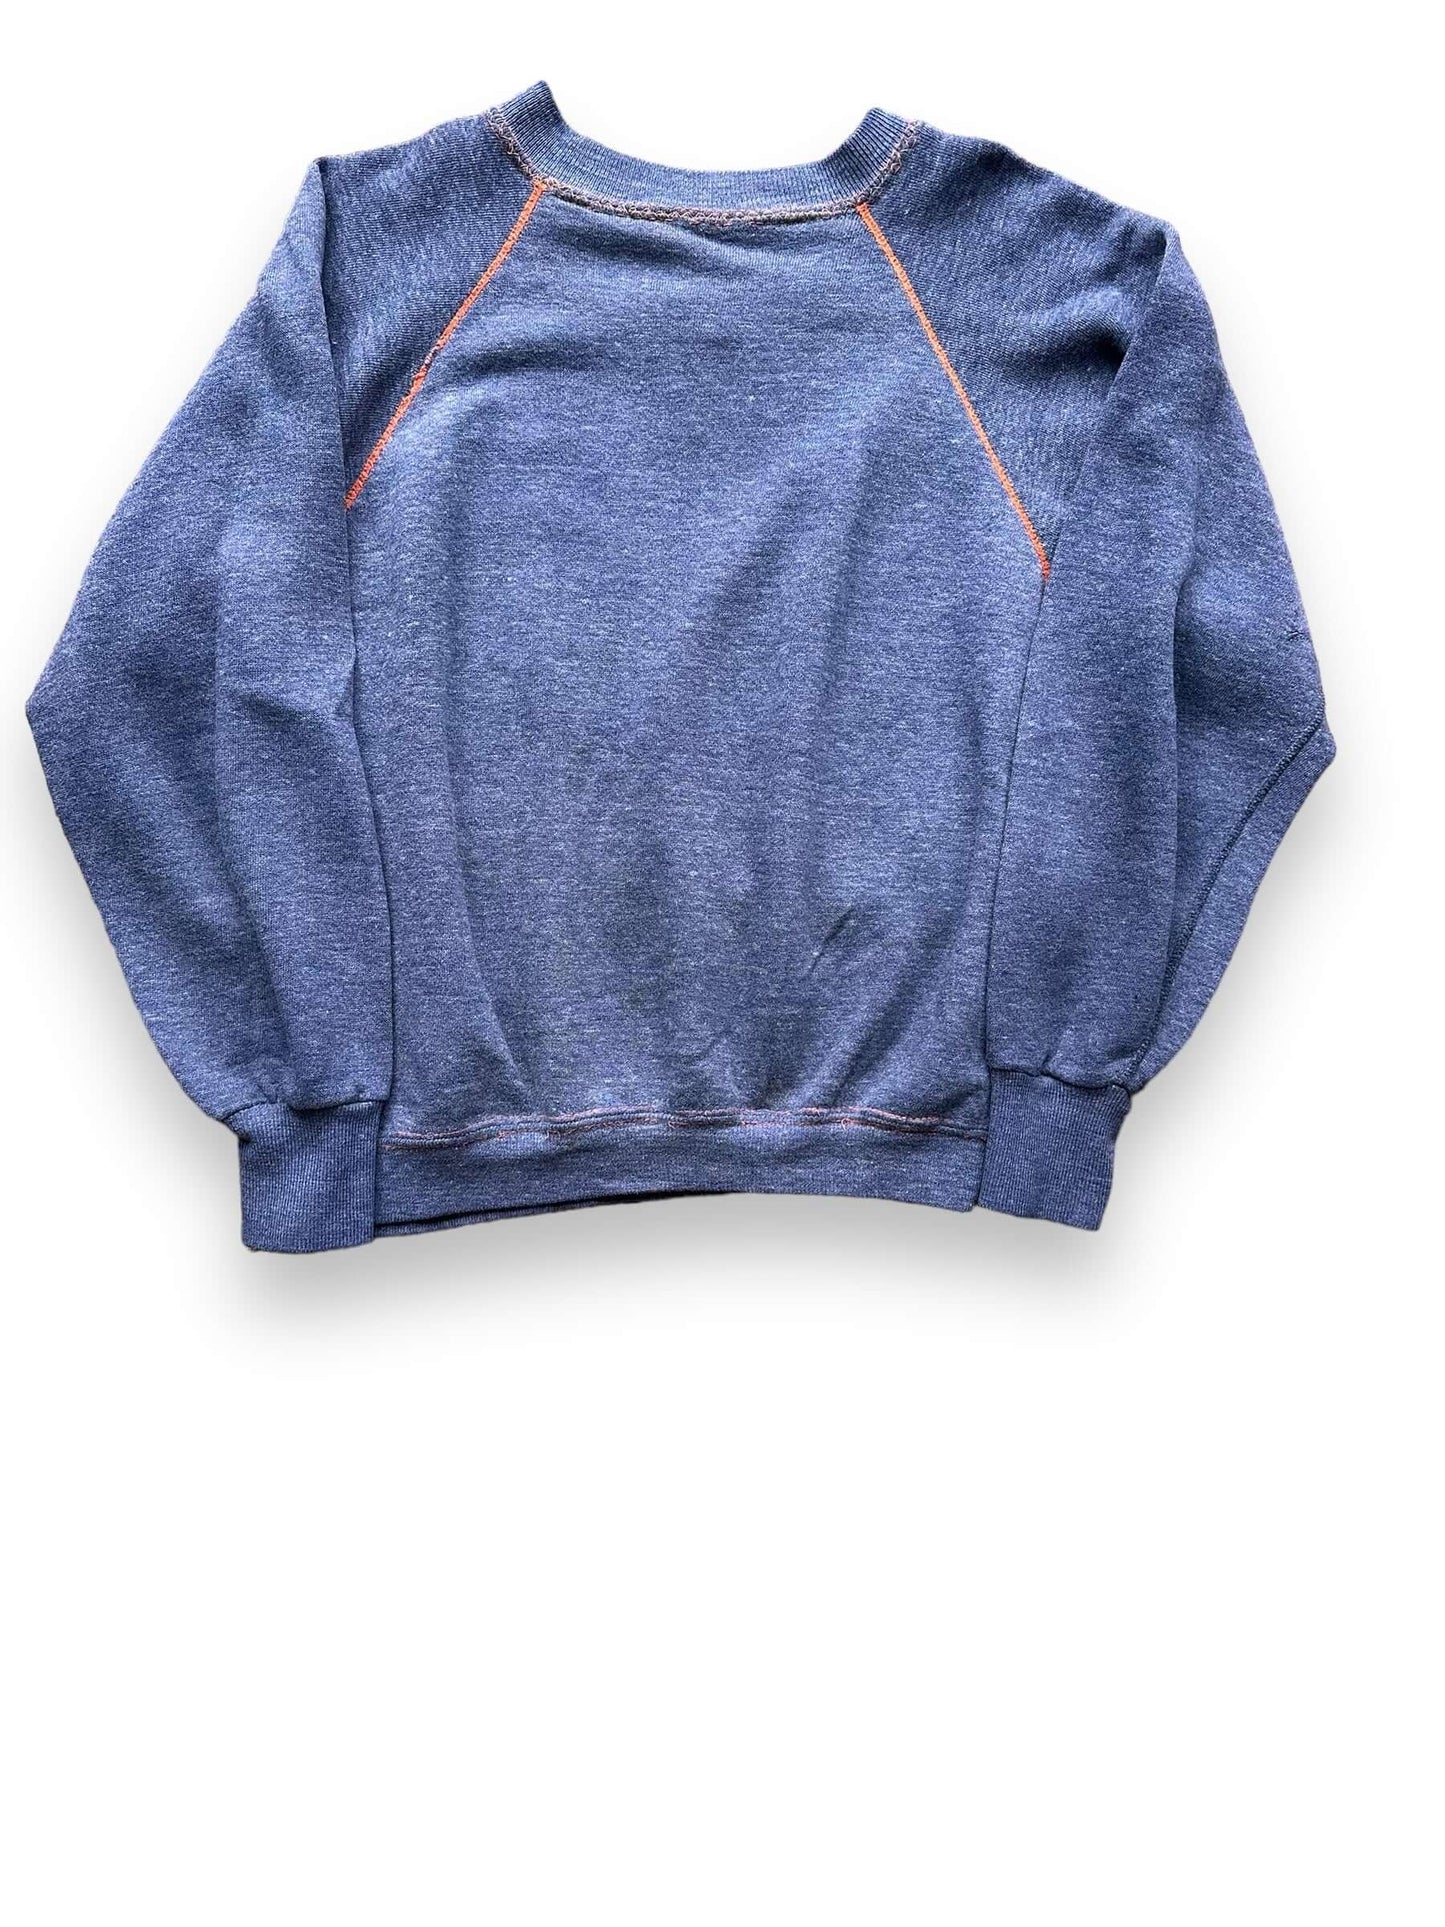 Front View of Vintage Blue & Orange Contrast Stitch Crewneck SZ M | Vintage Sweatshirt Seattle